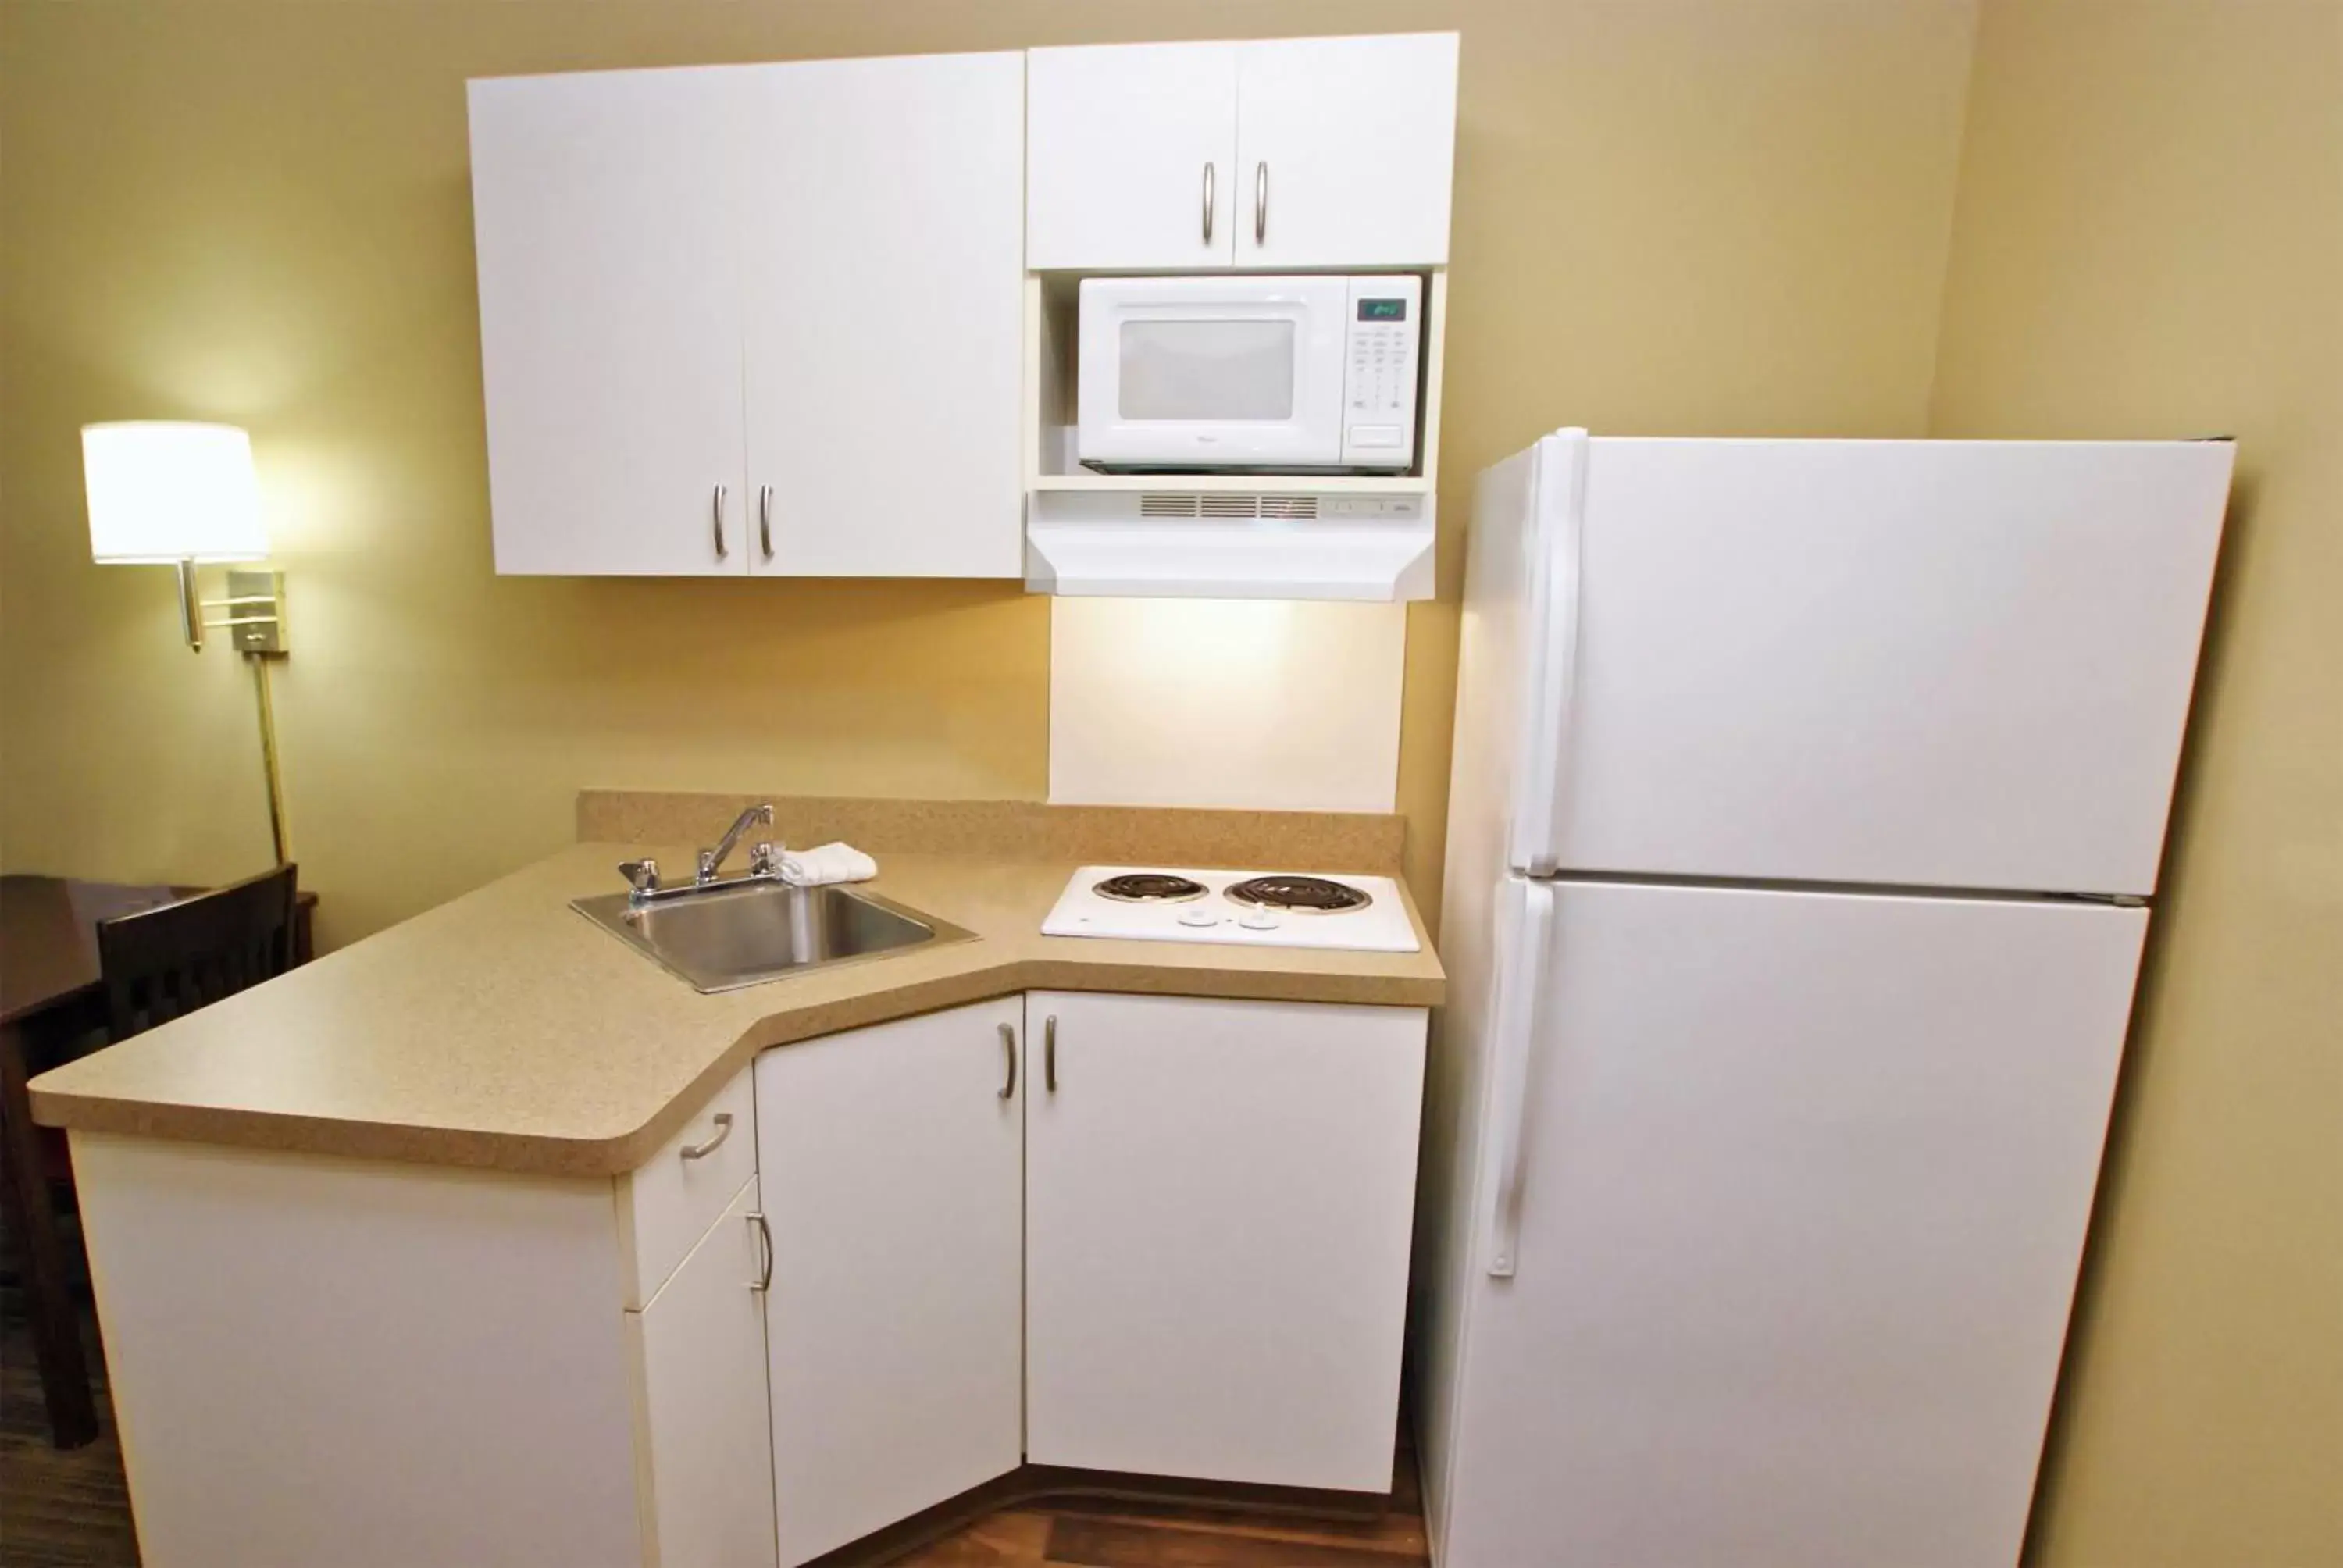 Kitchen or kitchenette, Kitchen/Kitchenette in Extended Stay America Suites - Boston - Tewksbury